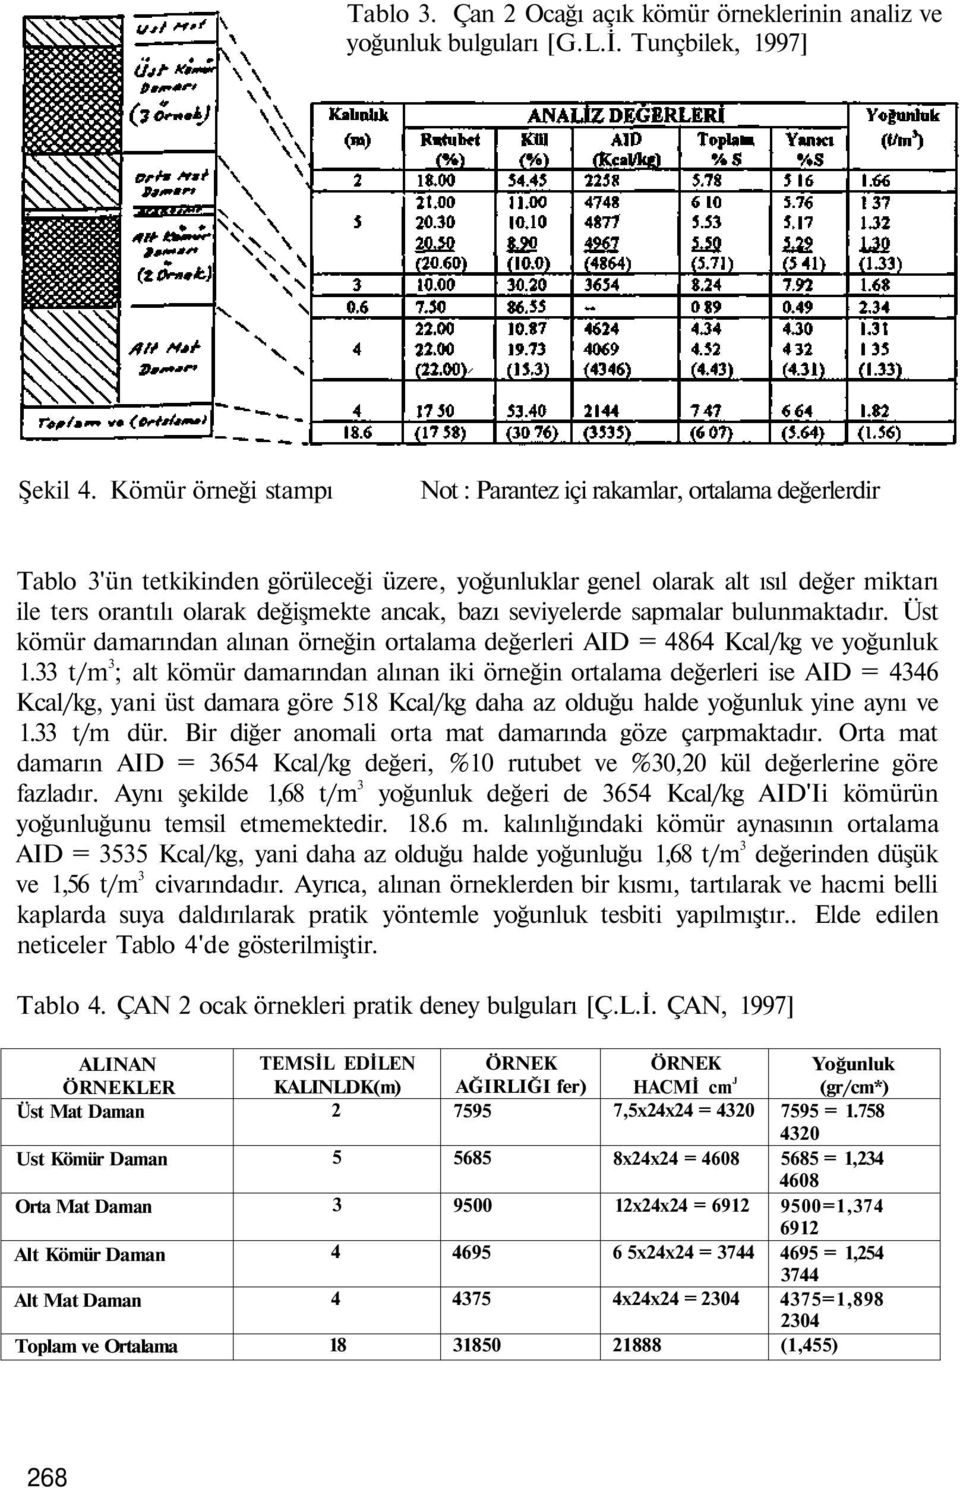 ancak, bazı seviyelerde sapmalar bulunmaktadır. Üst kömür damarından alınan örneğin ortalama değerleri AID = 4864 Kcal/kg ve yoğunluk 1.